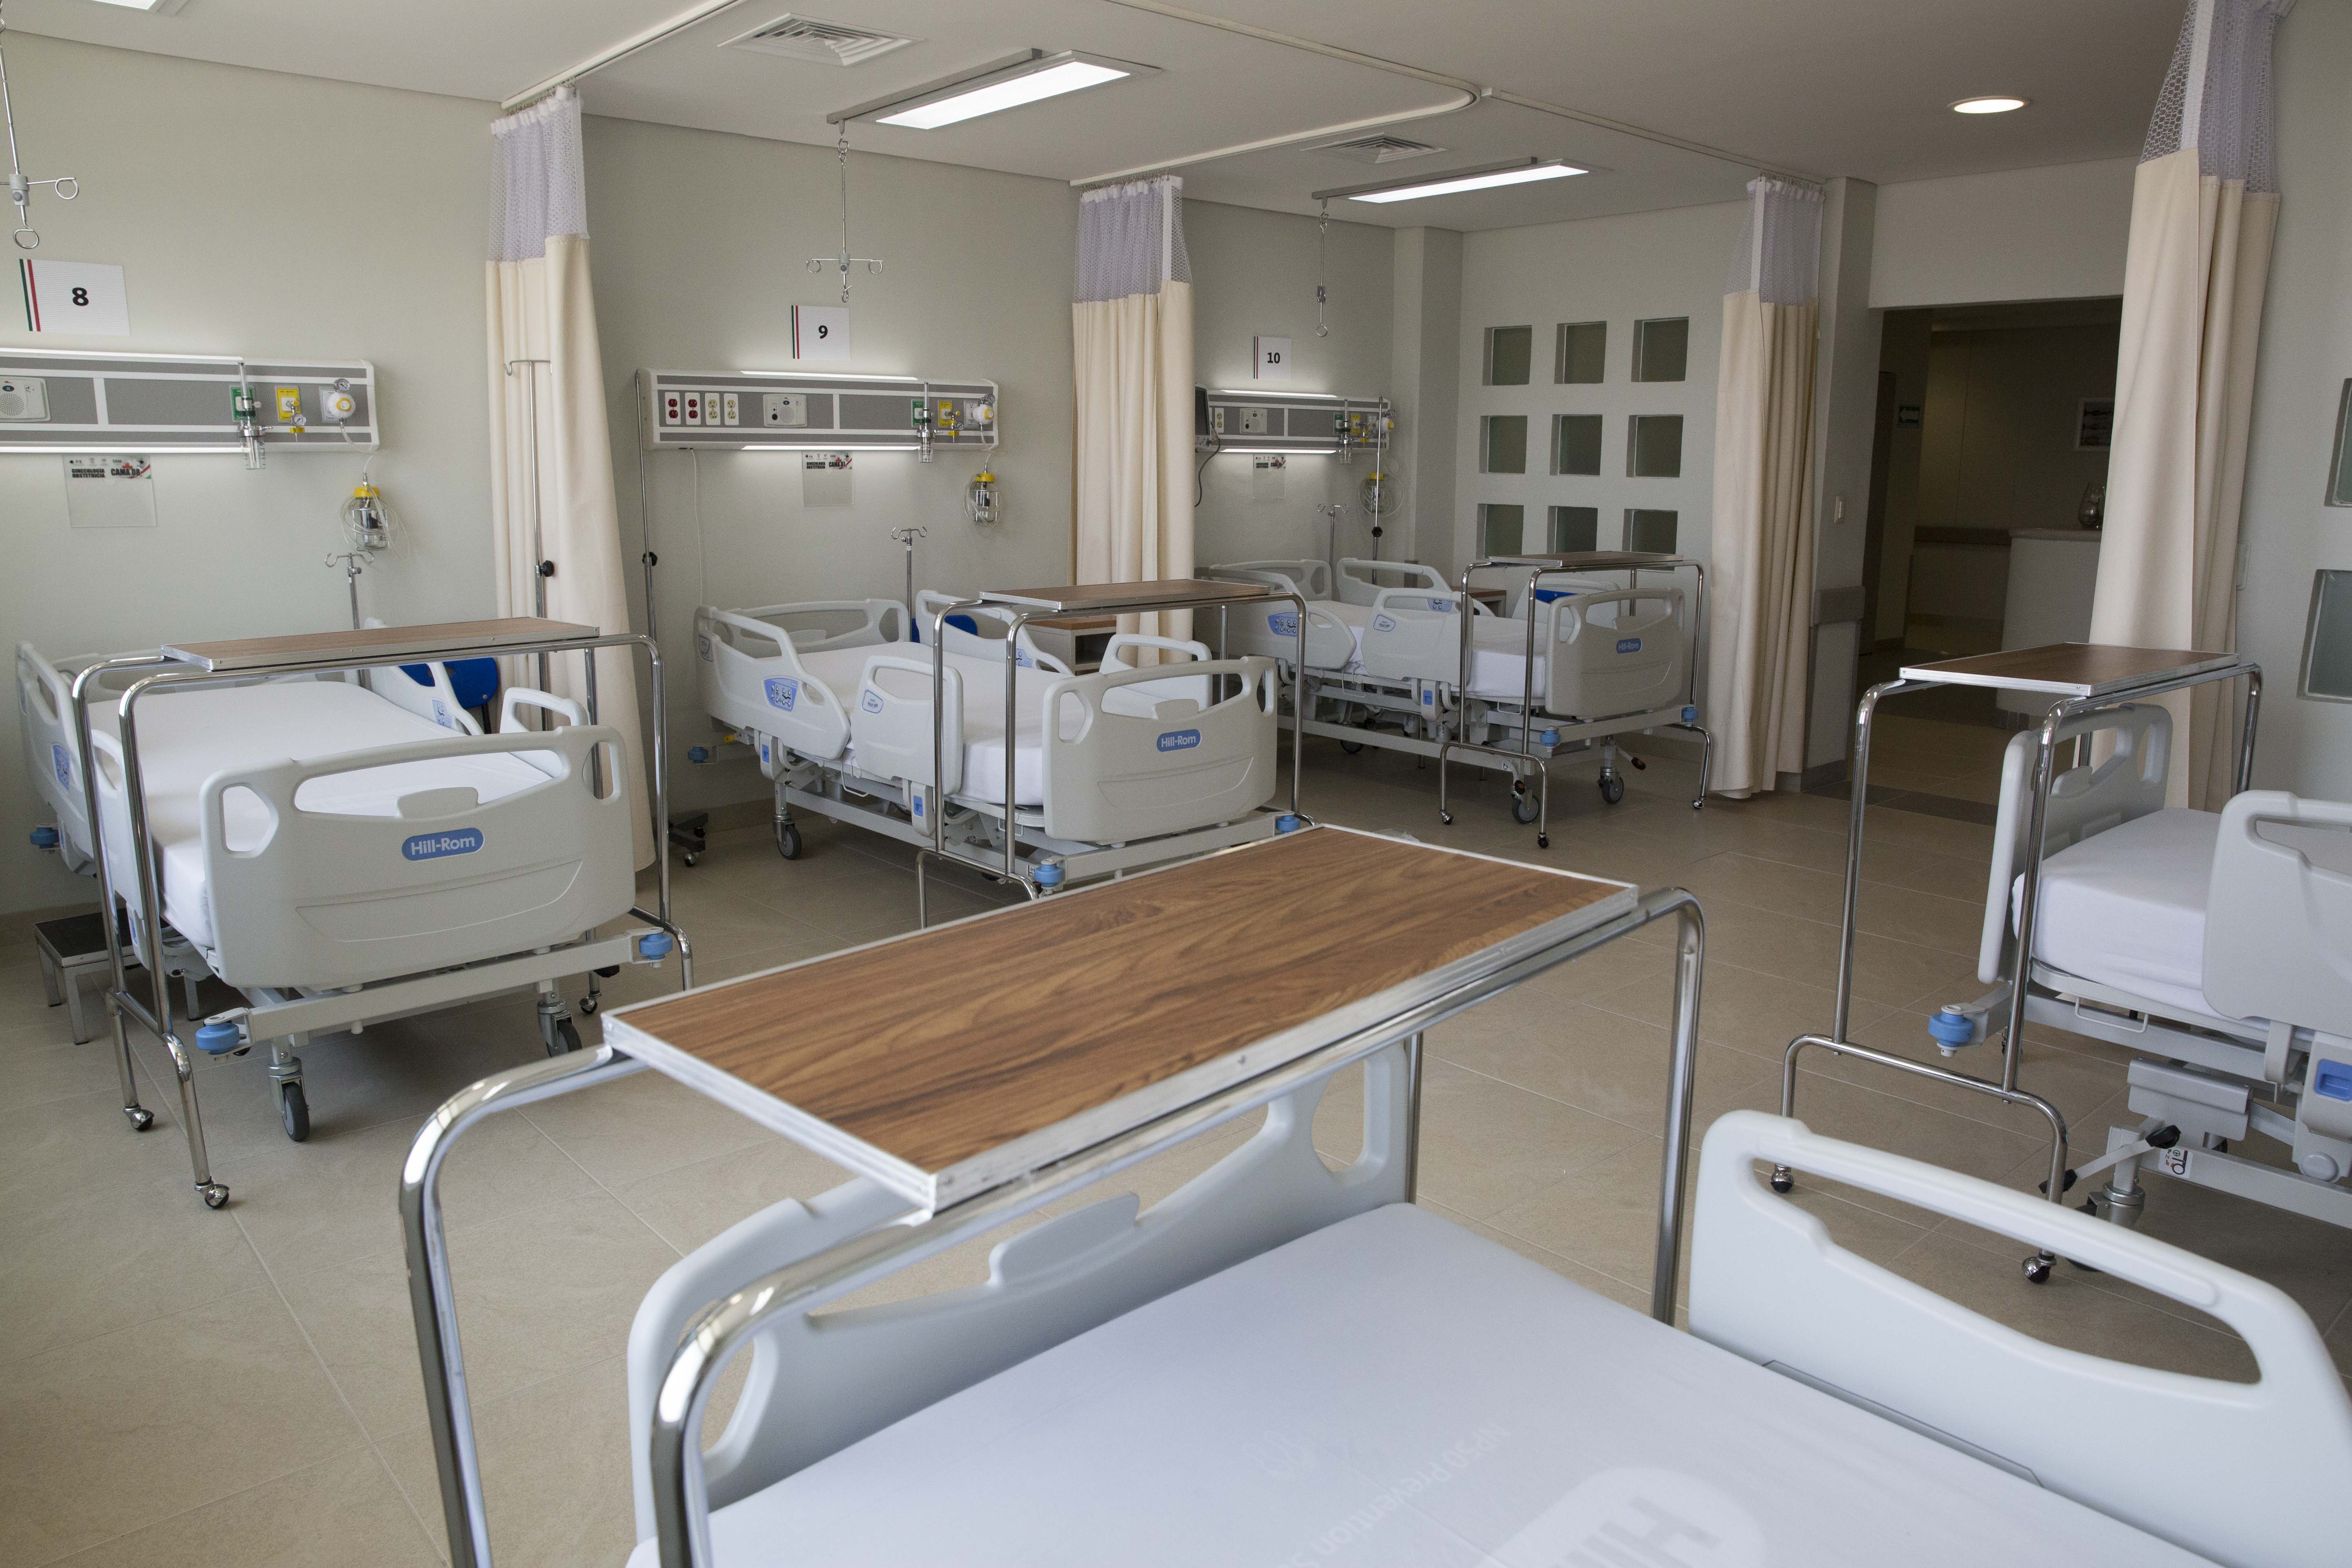 Ala de hospital com diversas camas e equipamentos